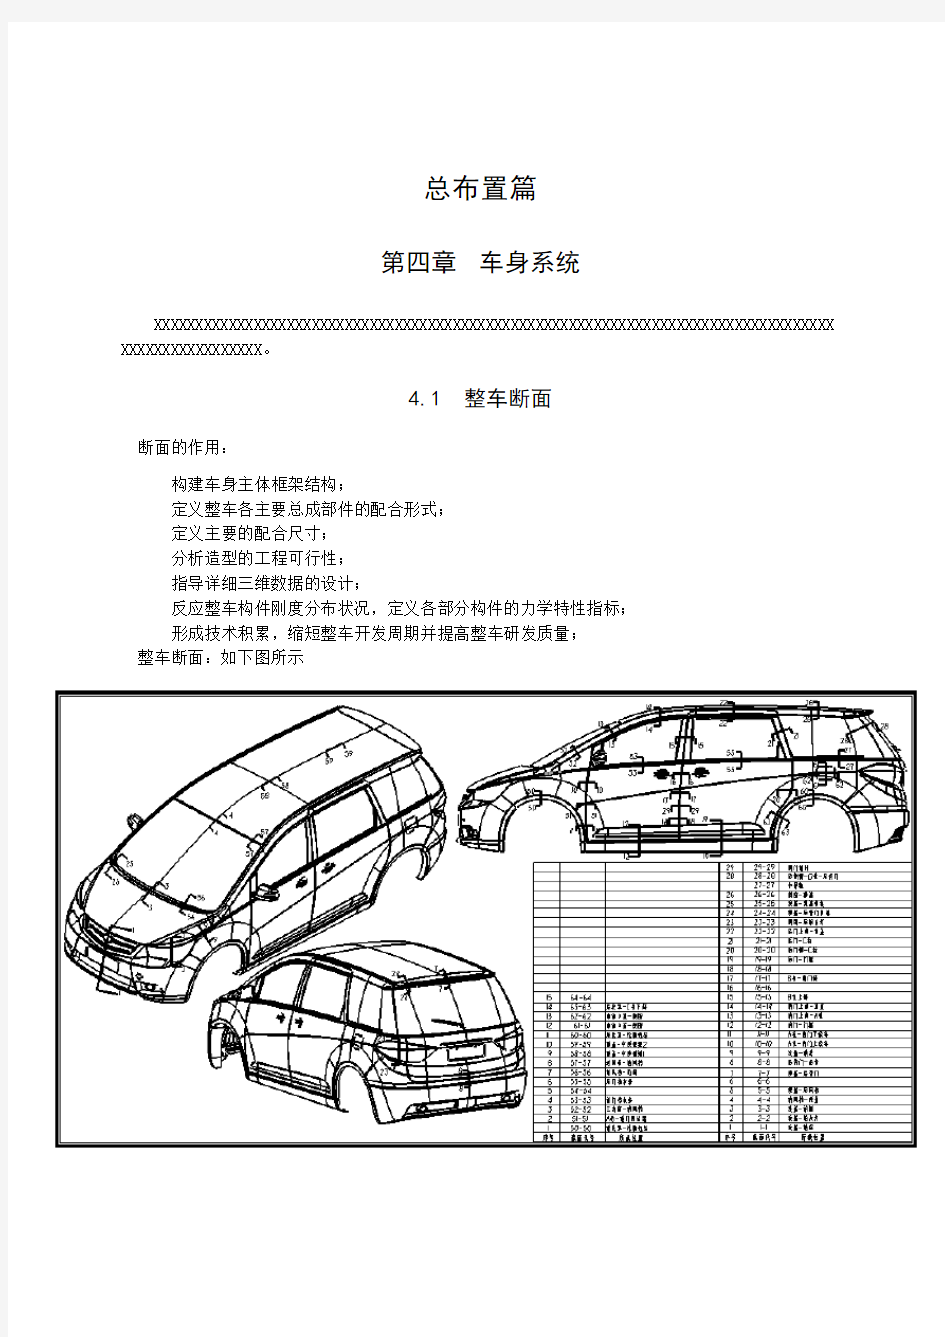 (参考)整车部设计手册车身系统